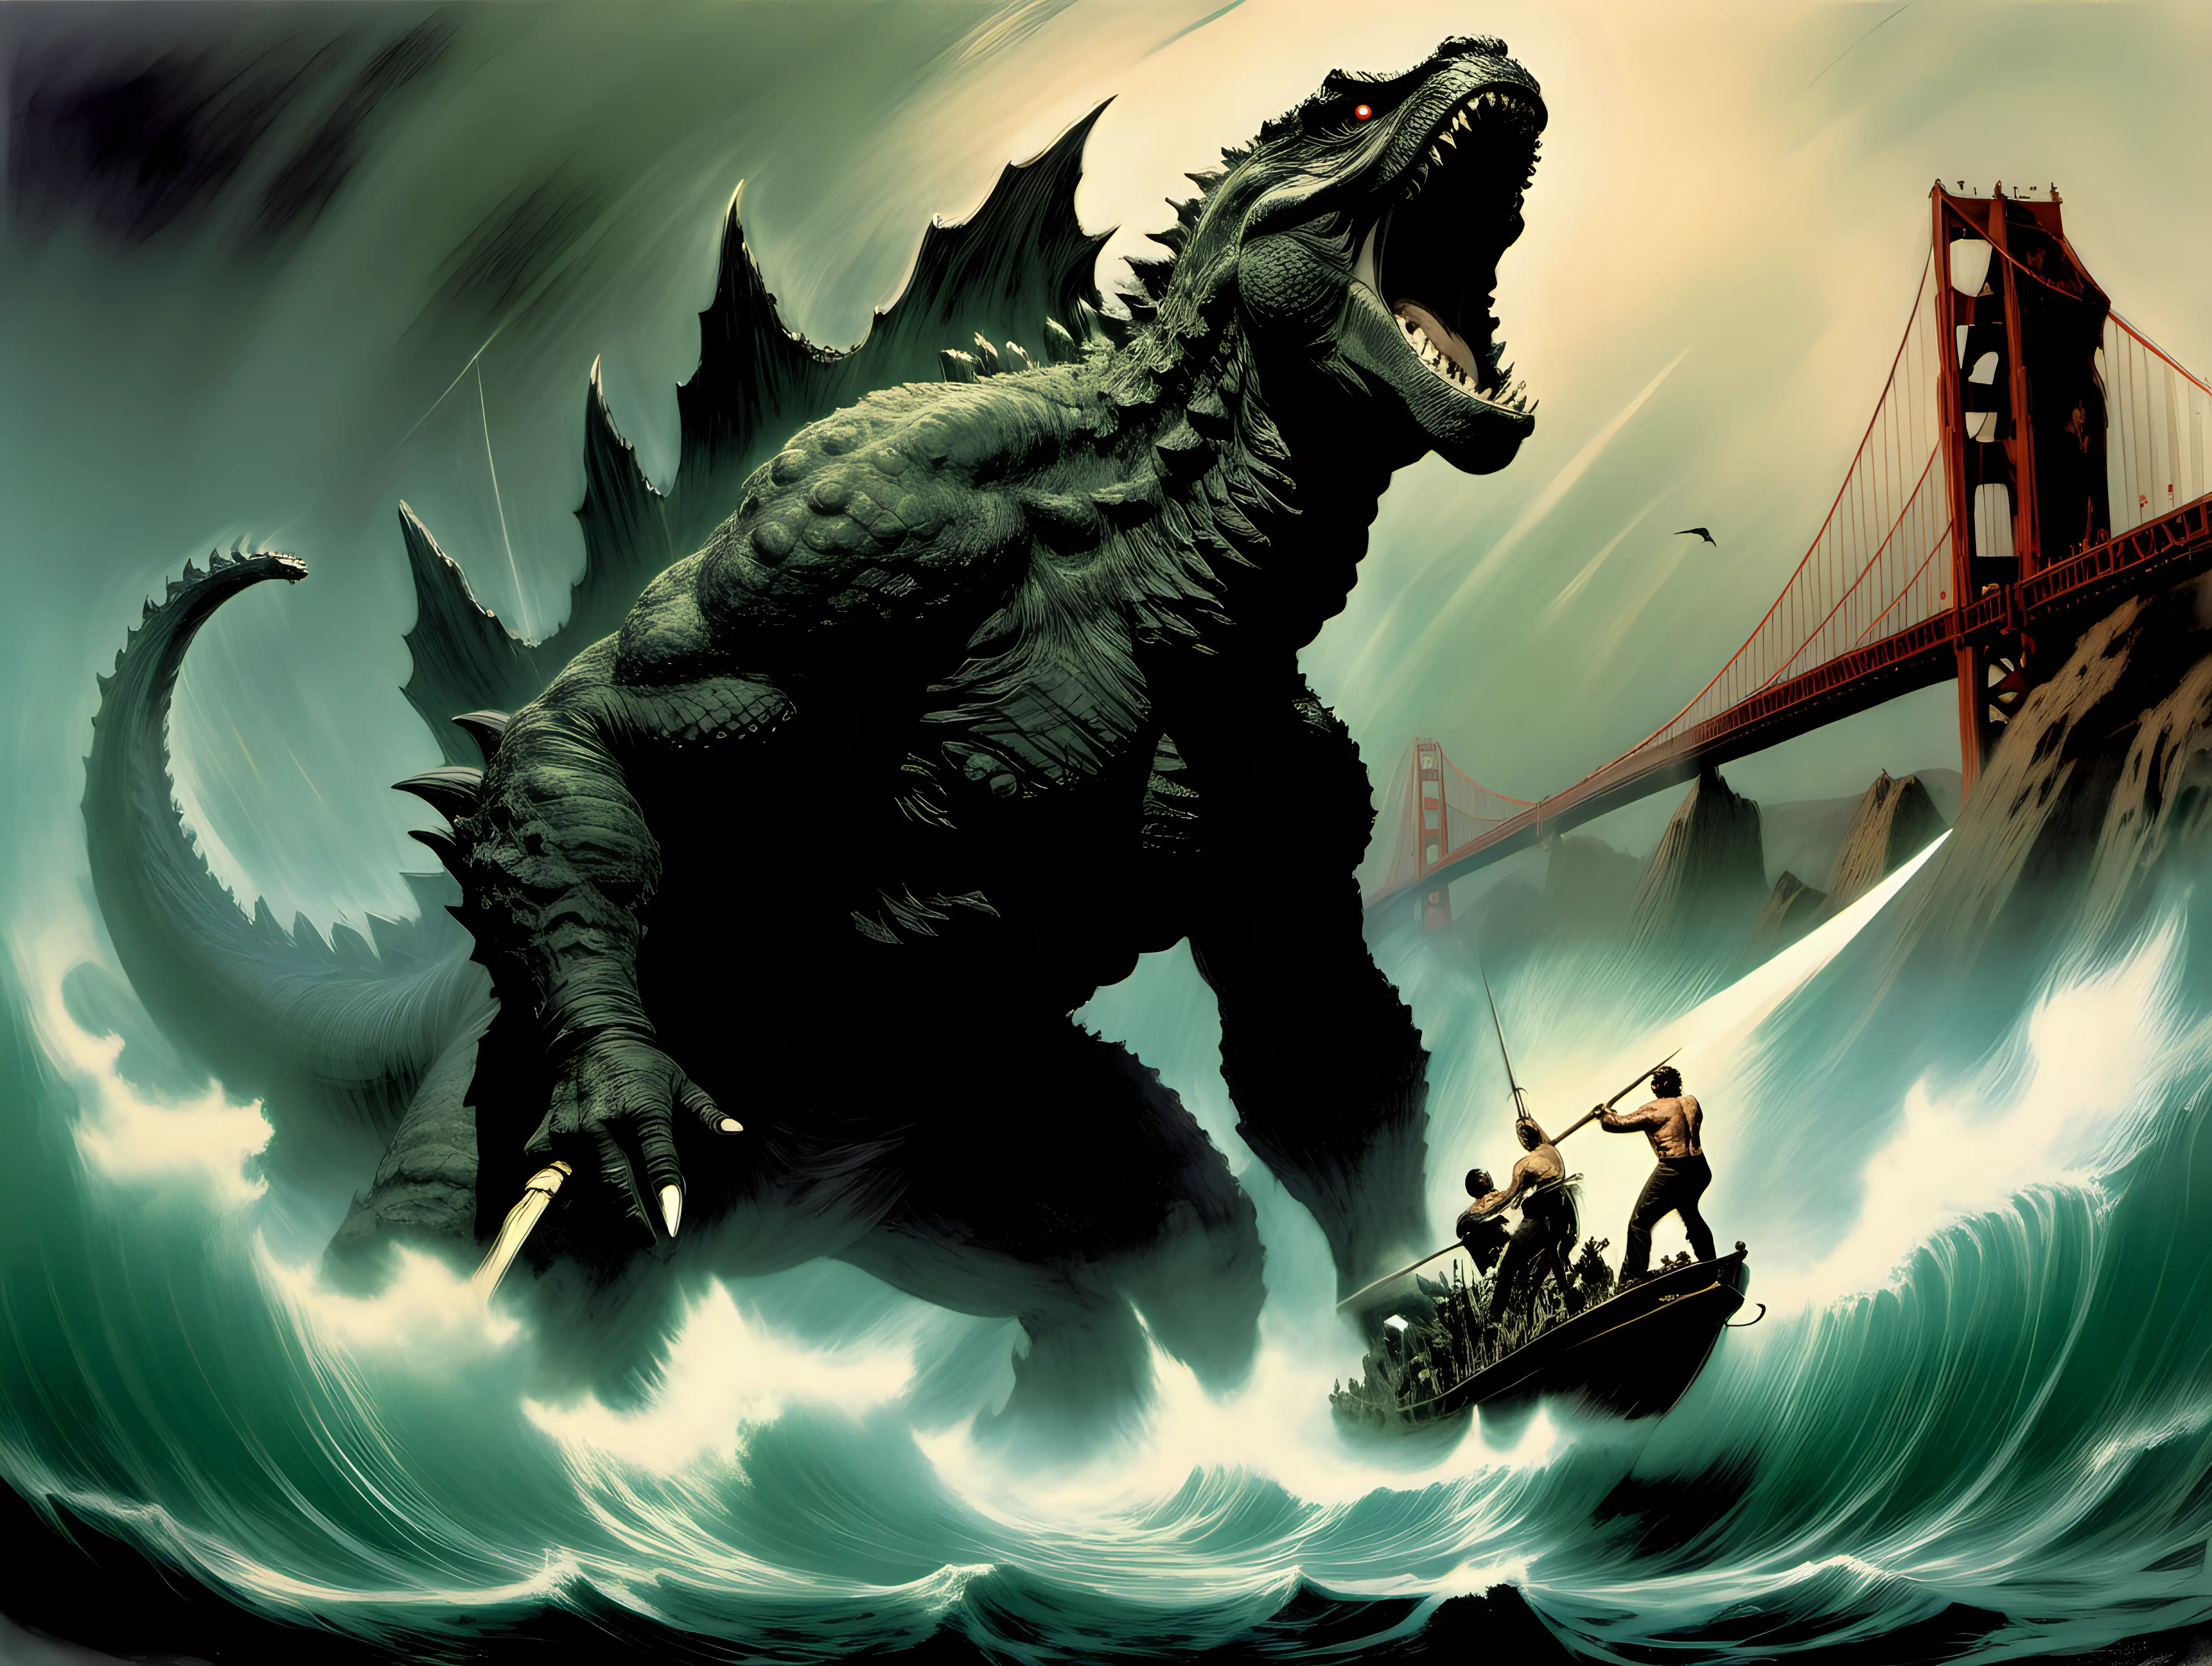 Captain Ahab harpooning Godzilla in the San Francisco Bay frank frazetta style